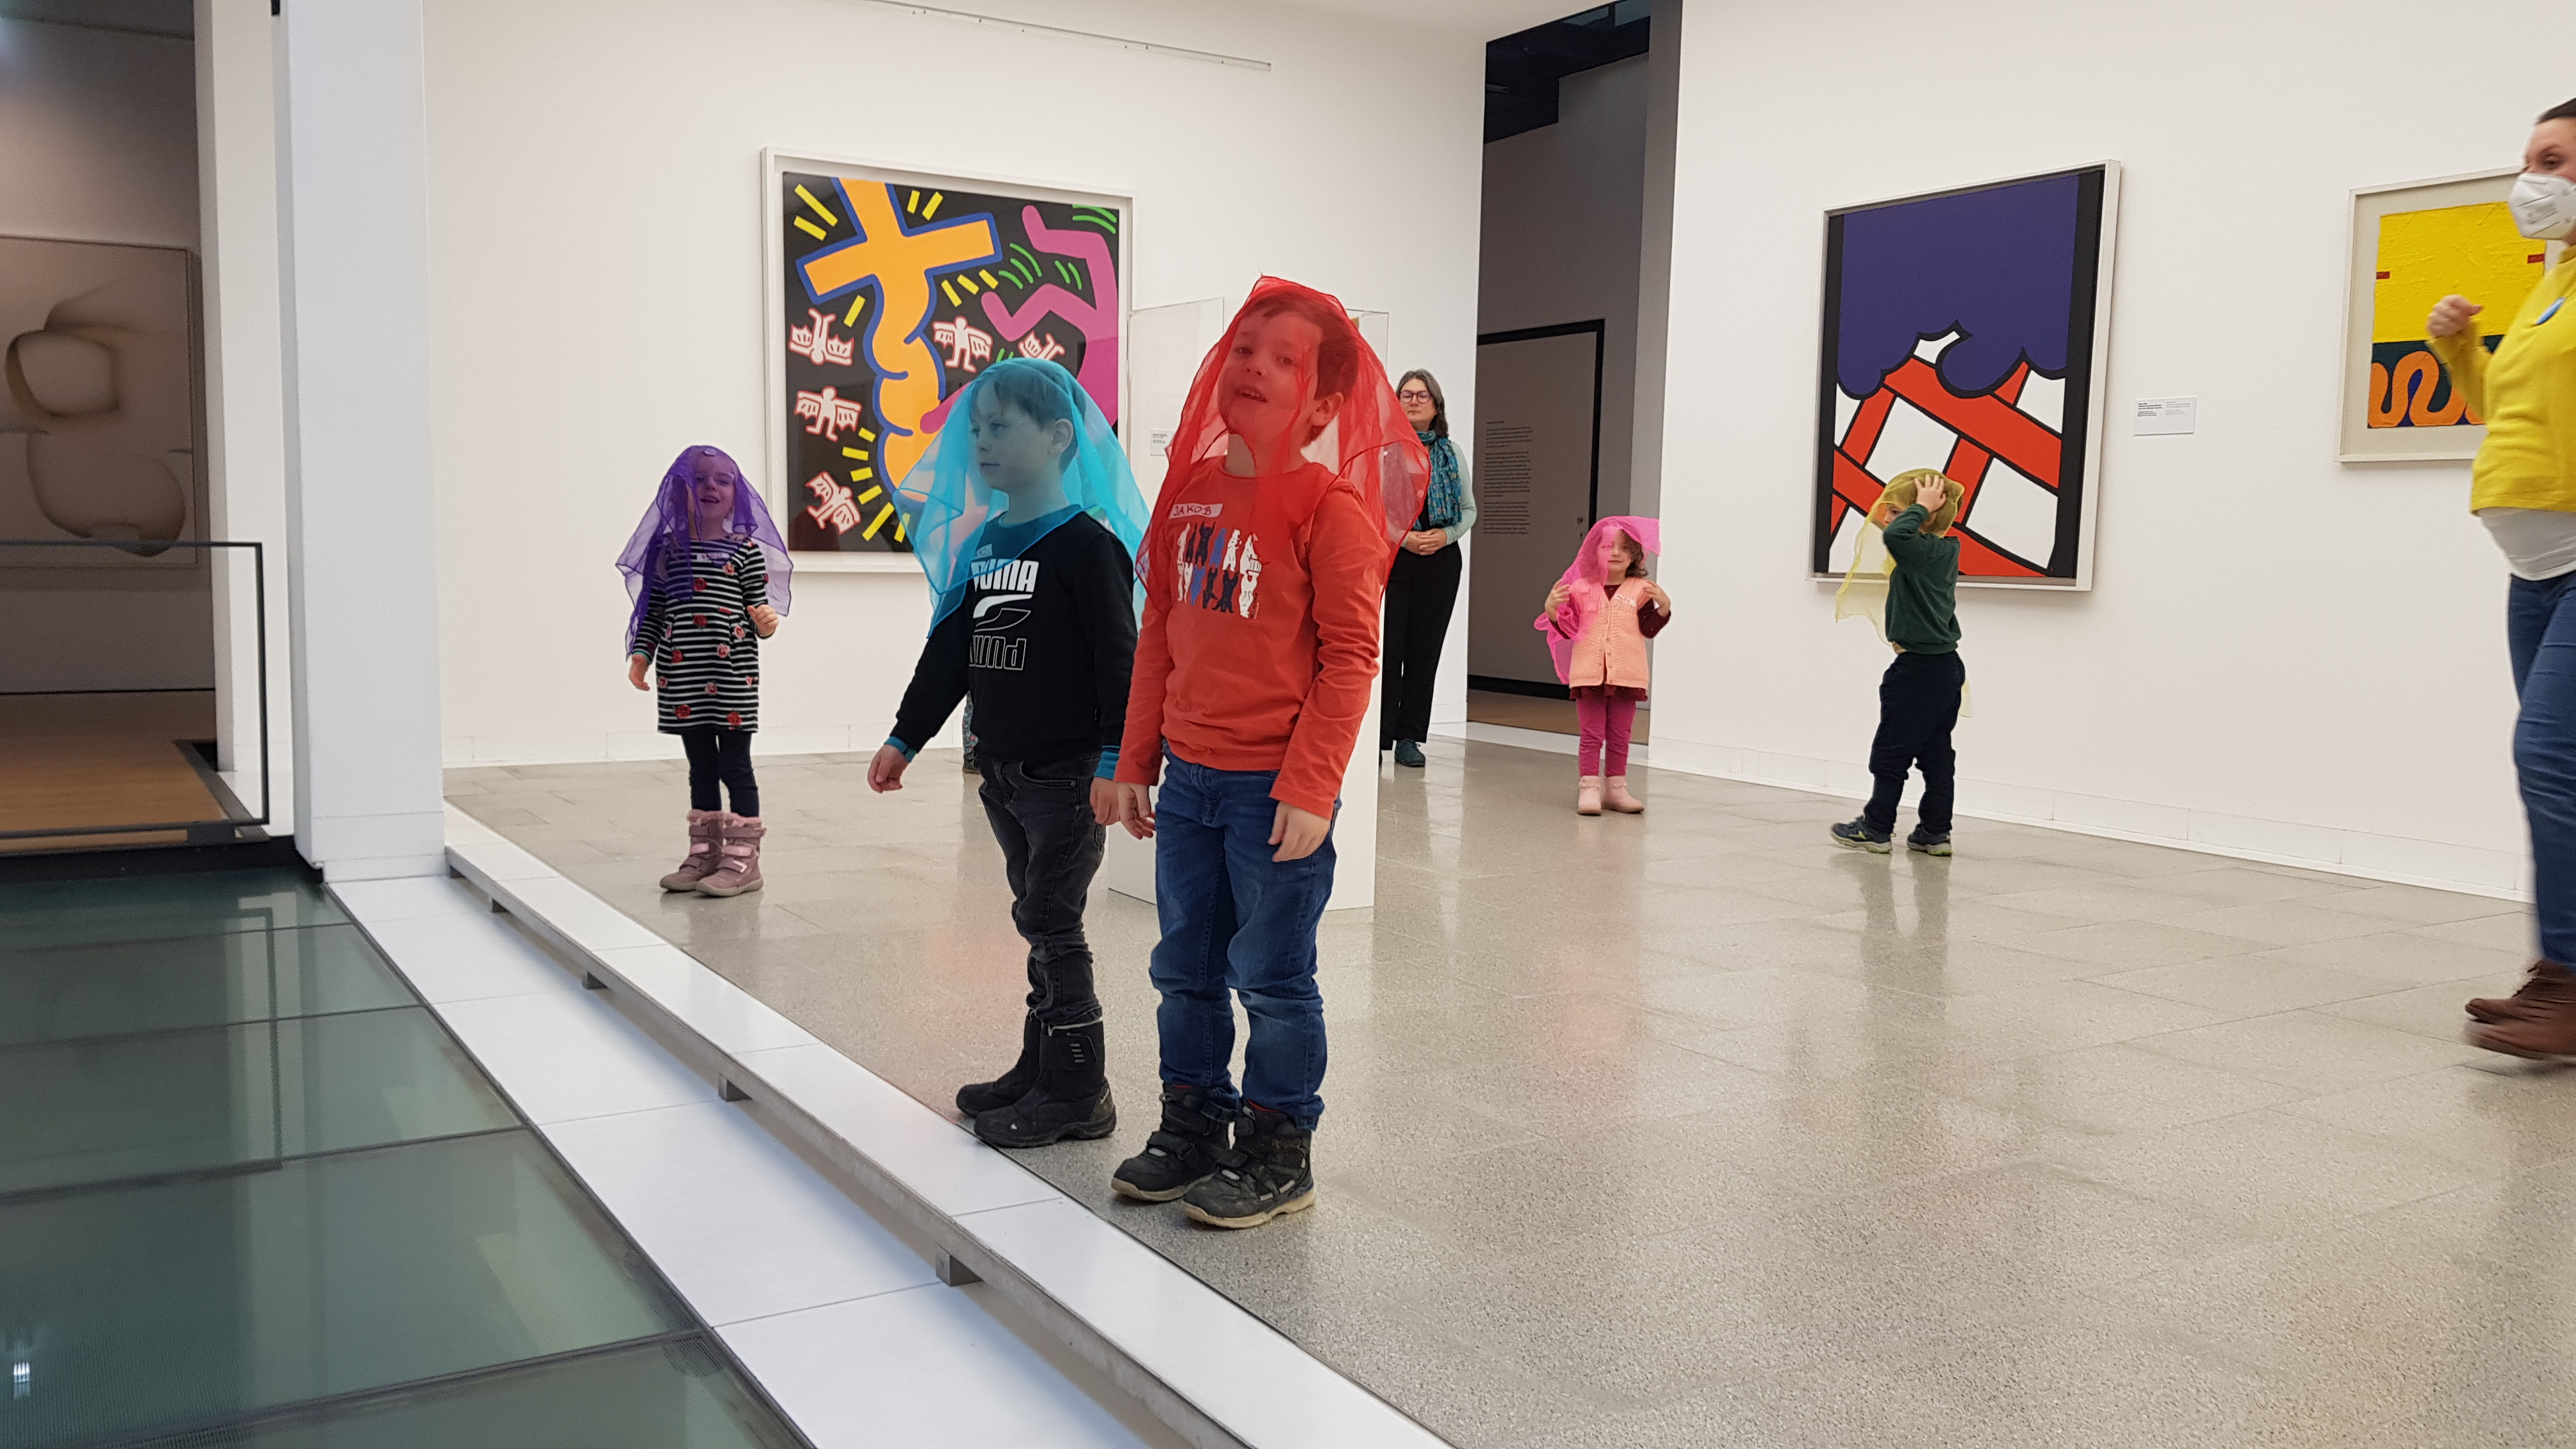 Kinder mit farbigen Tüchern im Museum Ulm vor bunter Pop Art